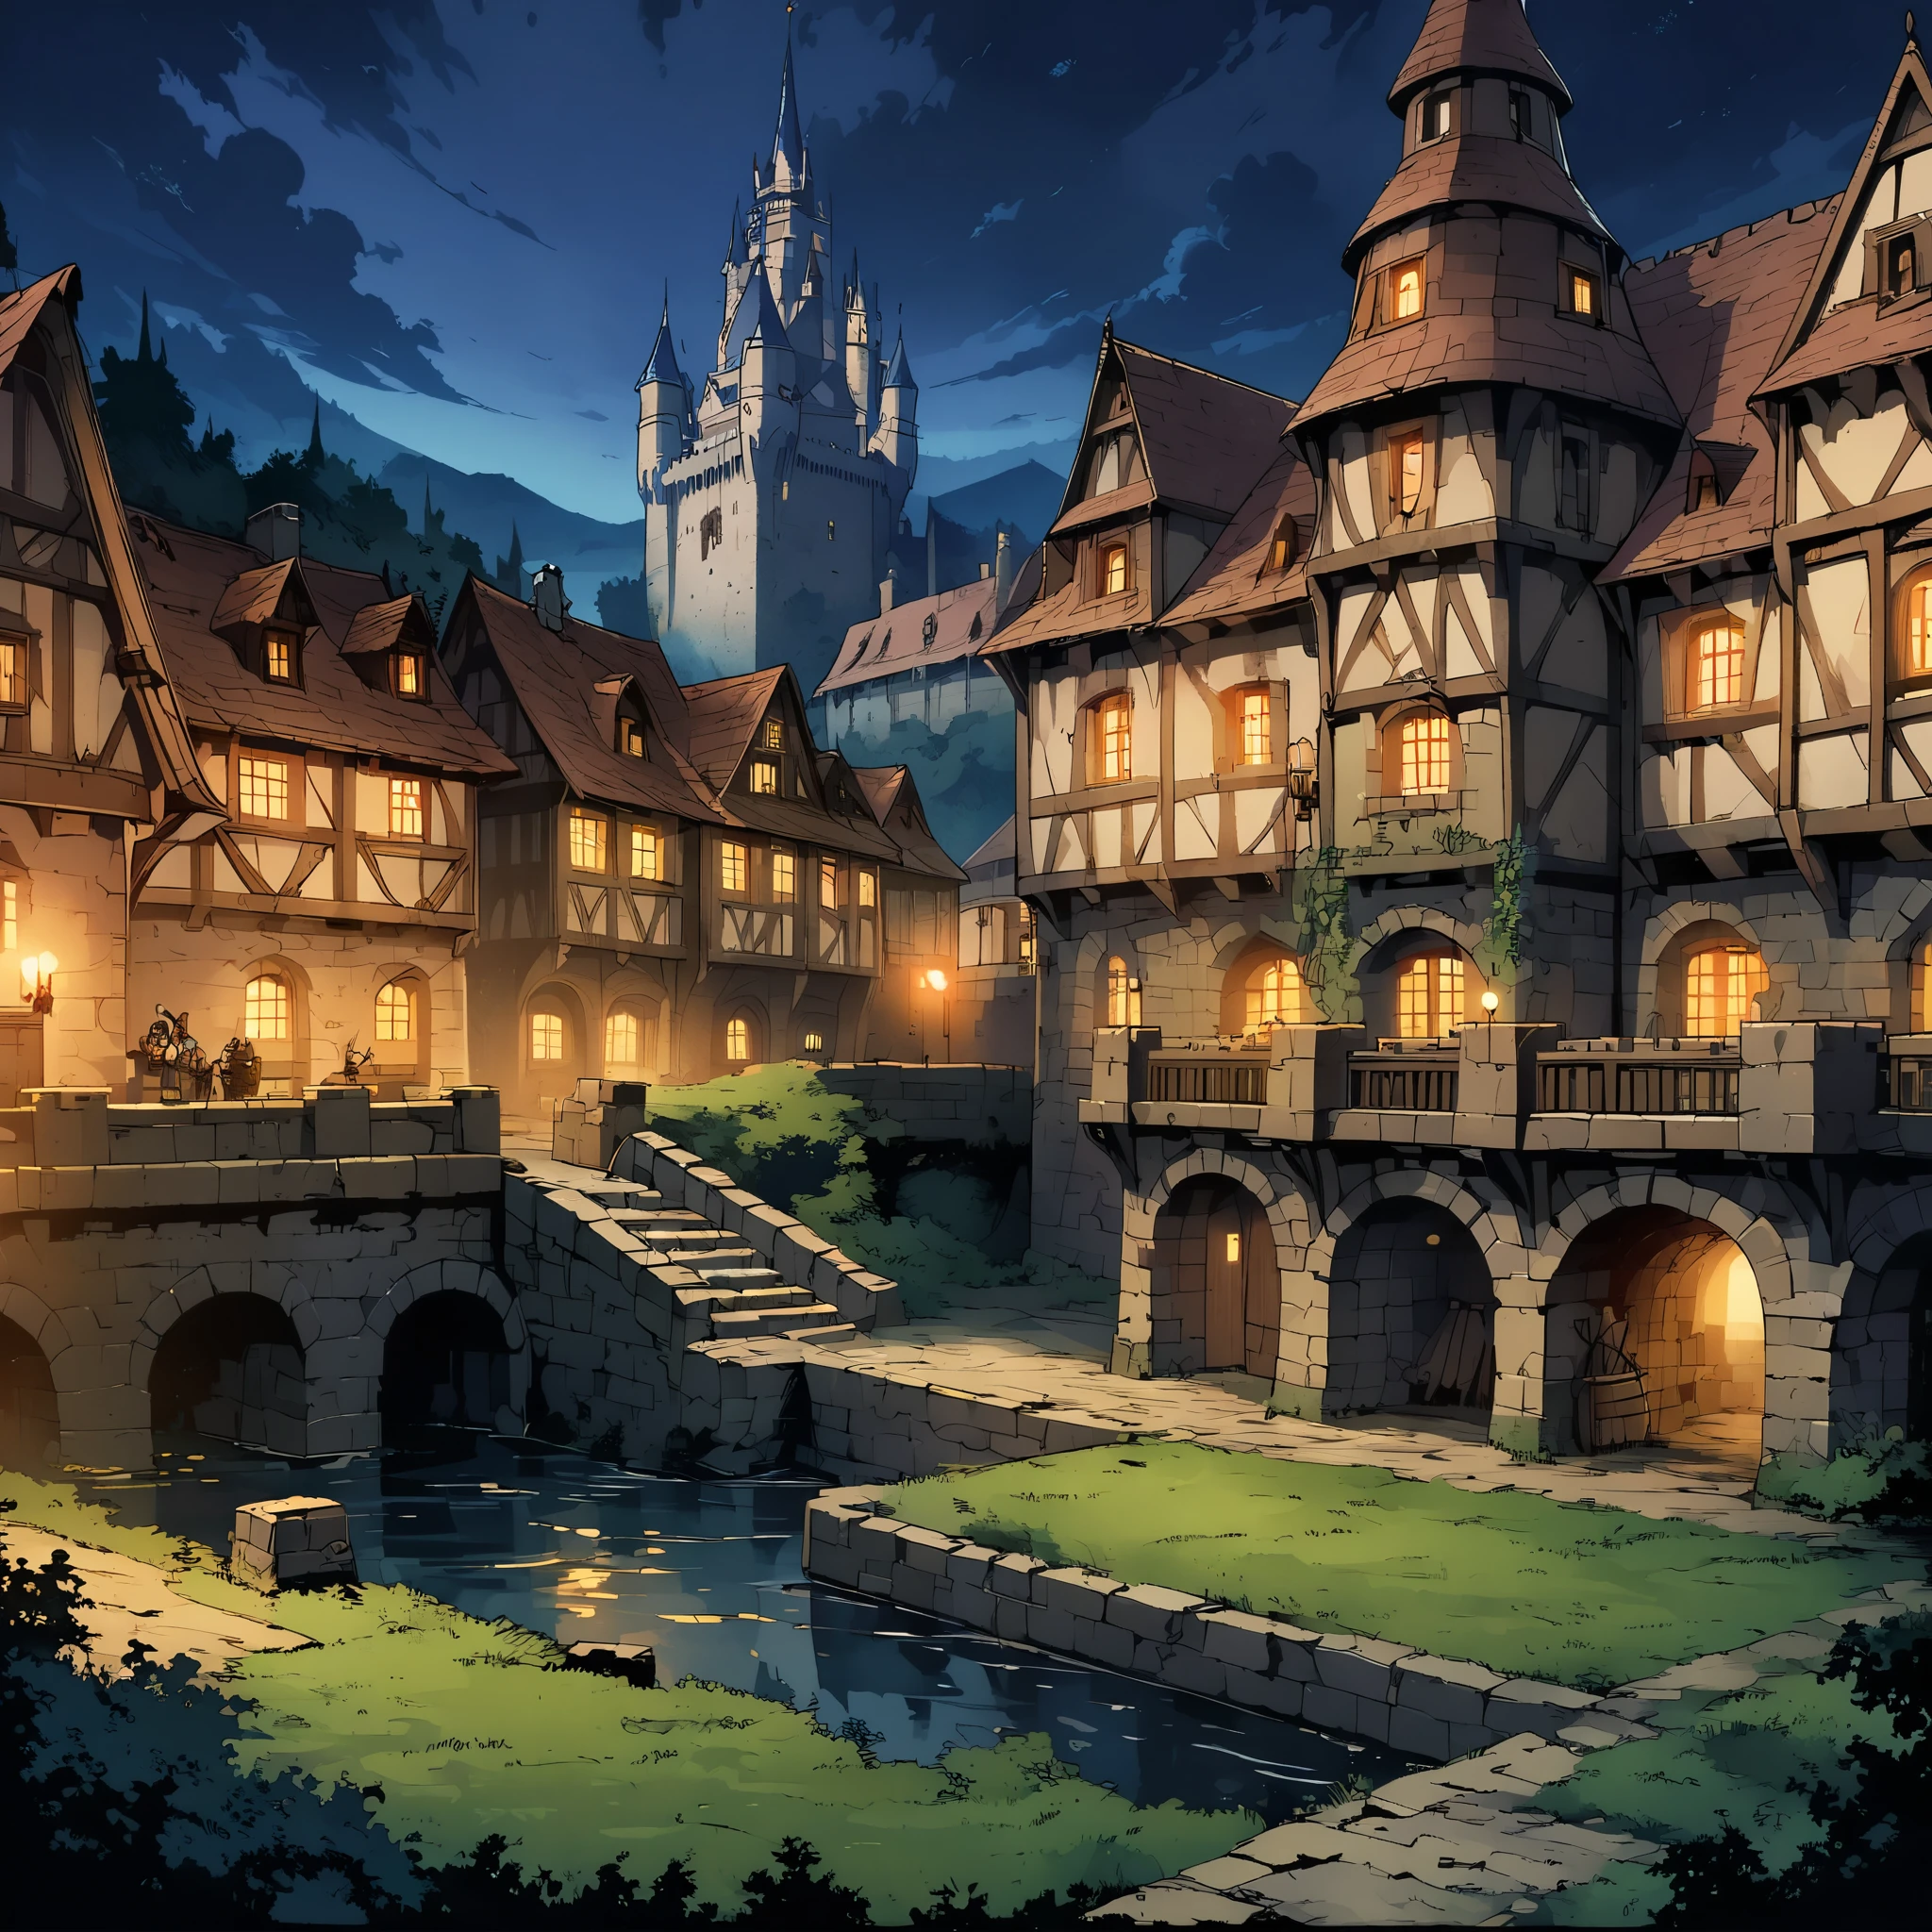 城(ヨーロッパの中世の城)，城の周りには堀がある，夜景。中景の構図，パノラマ写真，シーン画面，ゲームコンセプトアートスタイル，アニメイラスト風，高解像度，4K。